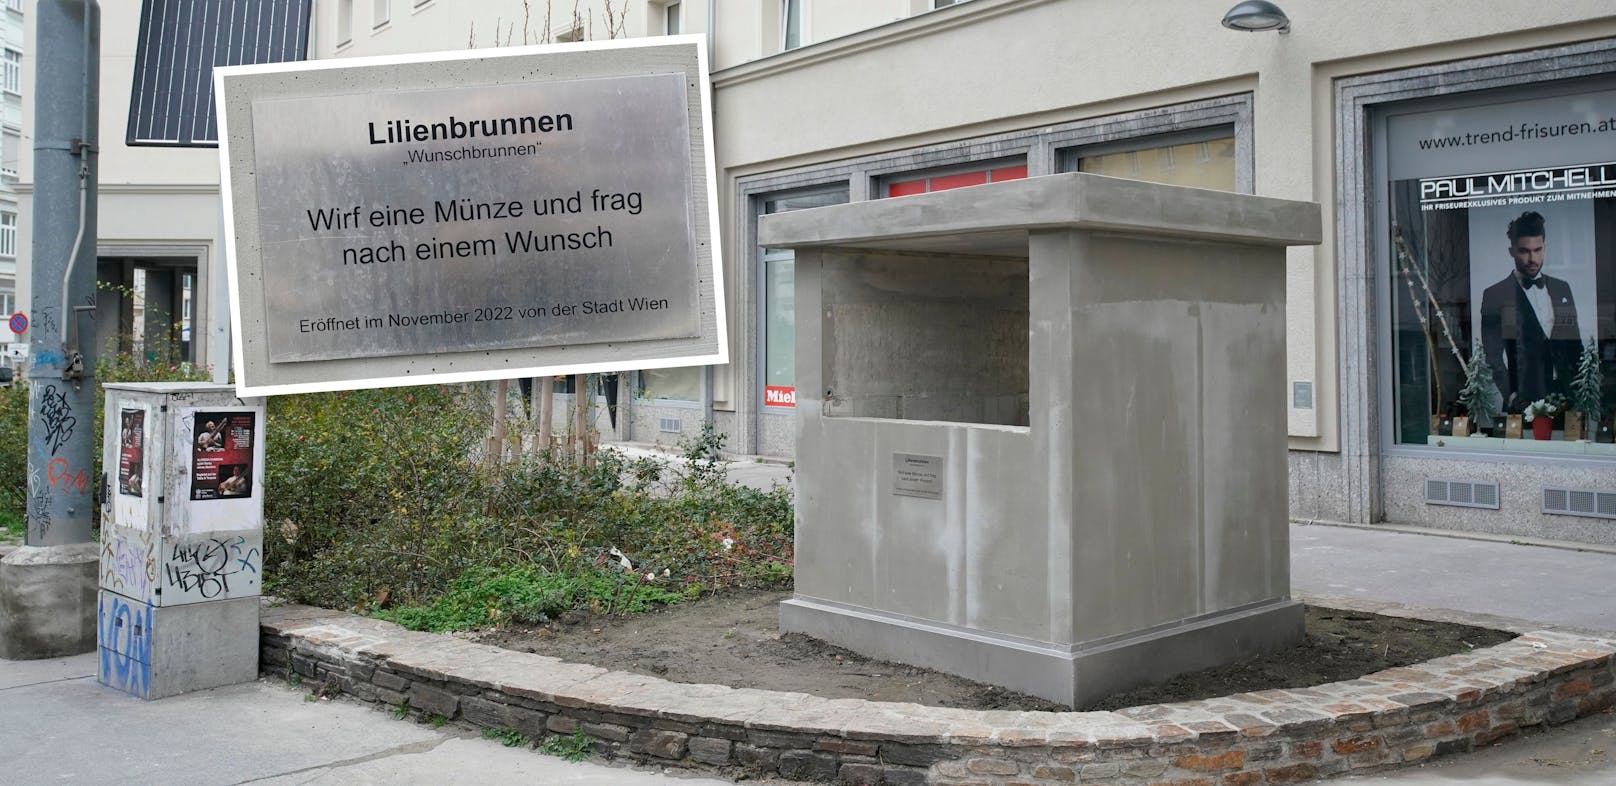 Dieser Betonklotz in Wien-Leopoldstadt gibt nun Rätsel auf. Die Plakette dürfte ein Fake sein.